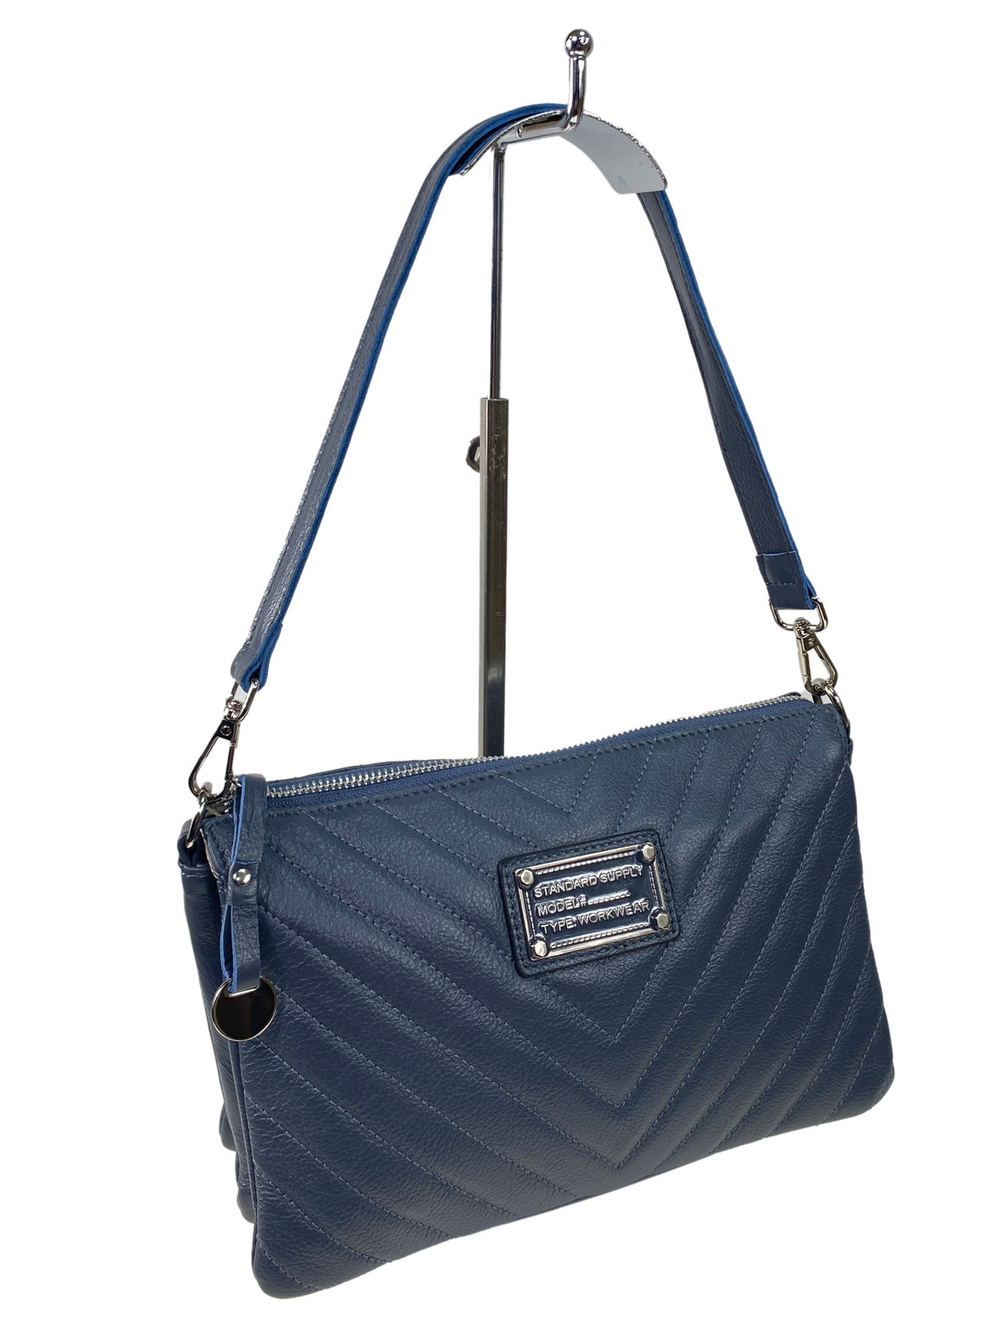 Женская сумка клатч из натуральной кожи, цвет синий